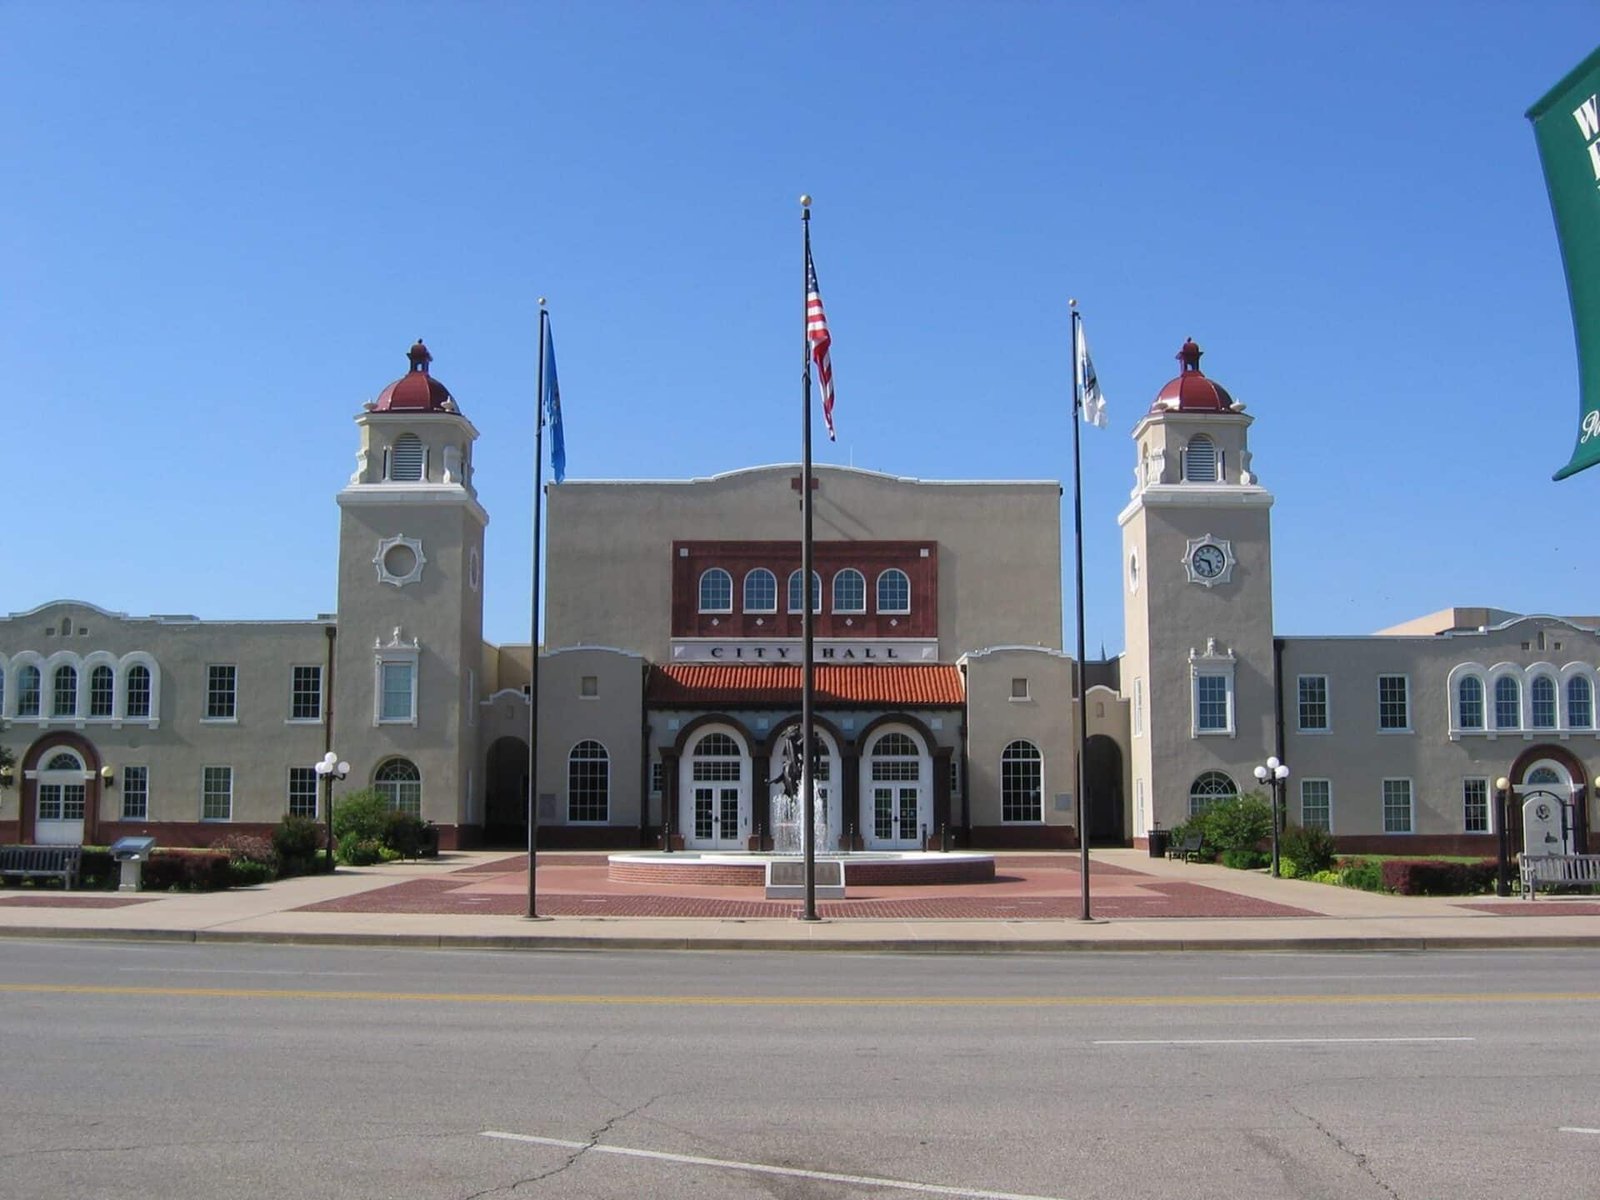 Ponca City, Oklahoma